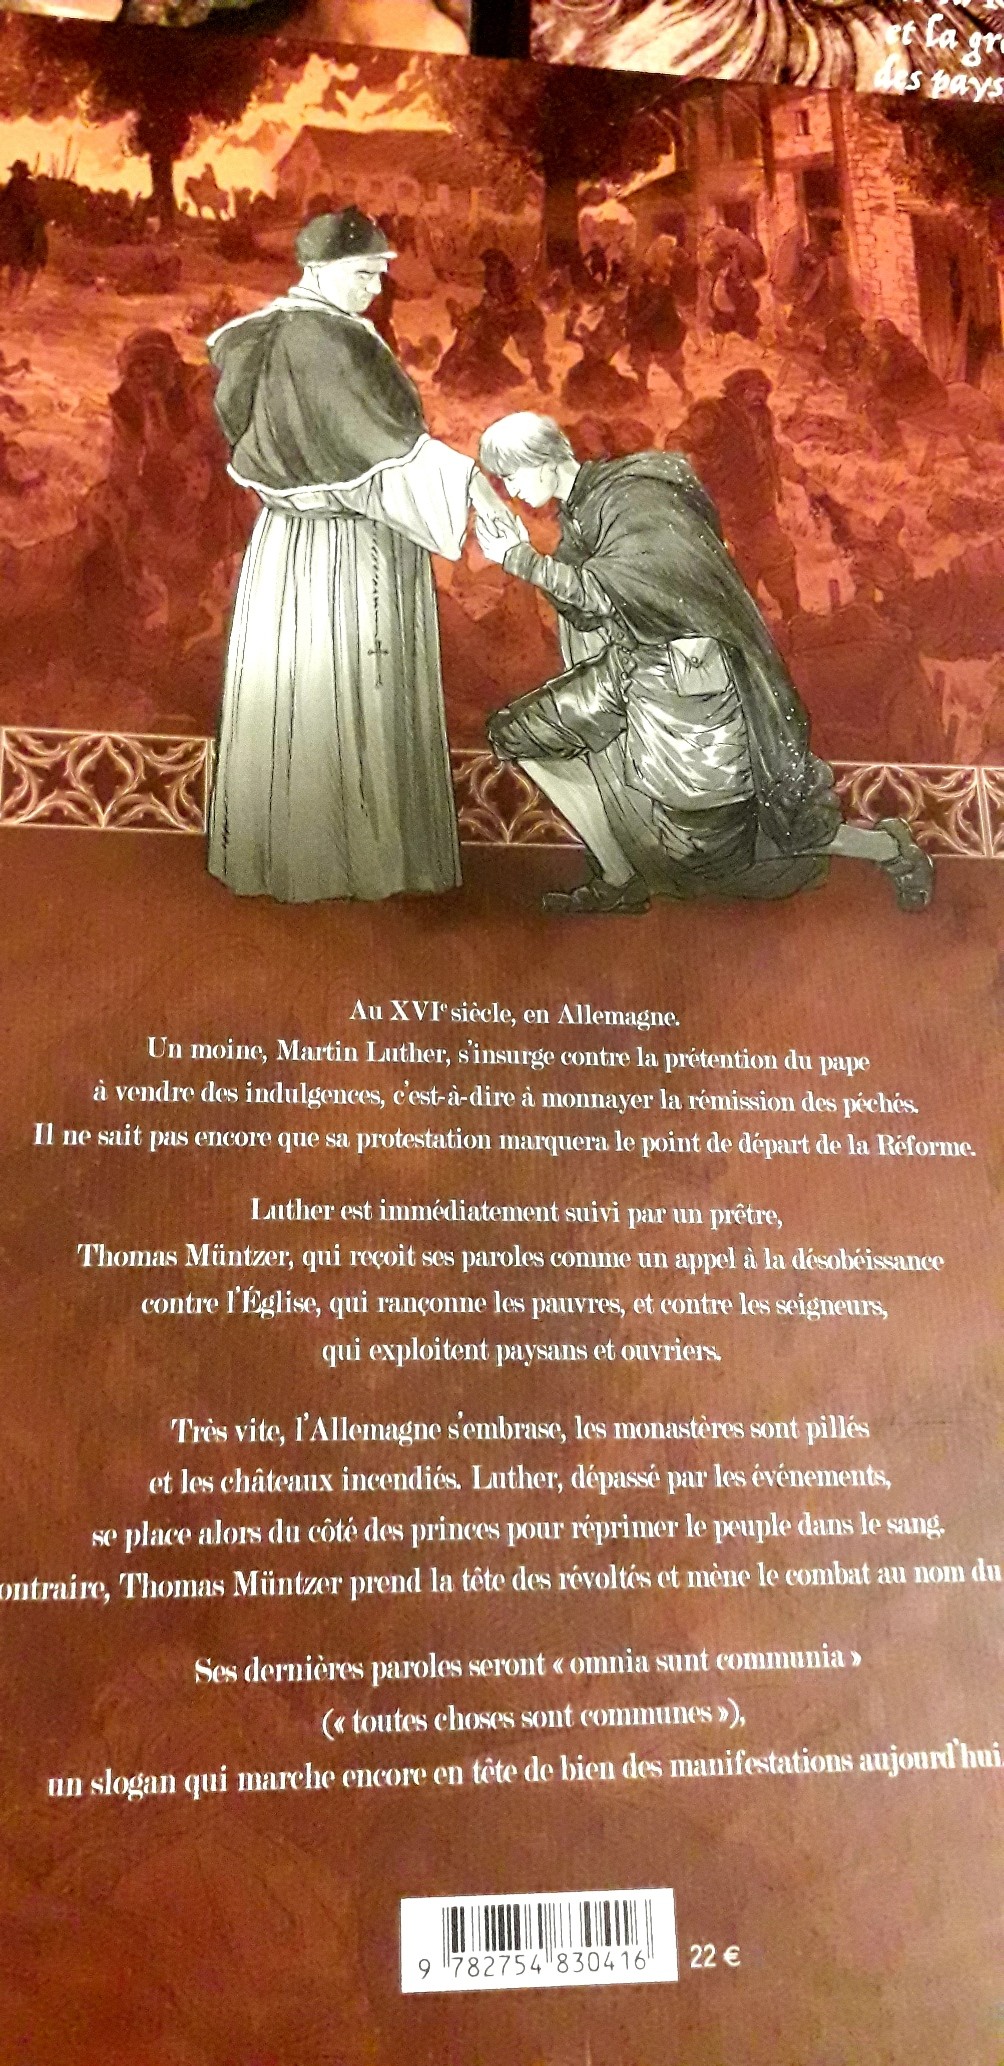 4ème de couverture de la BD de Gérard Mordillat et Éric Liberge, "1525-La guerre des paysans", aux éditions Futuropolis.